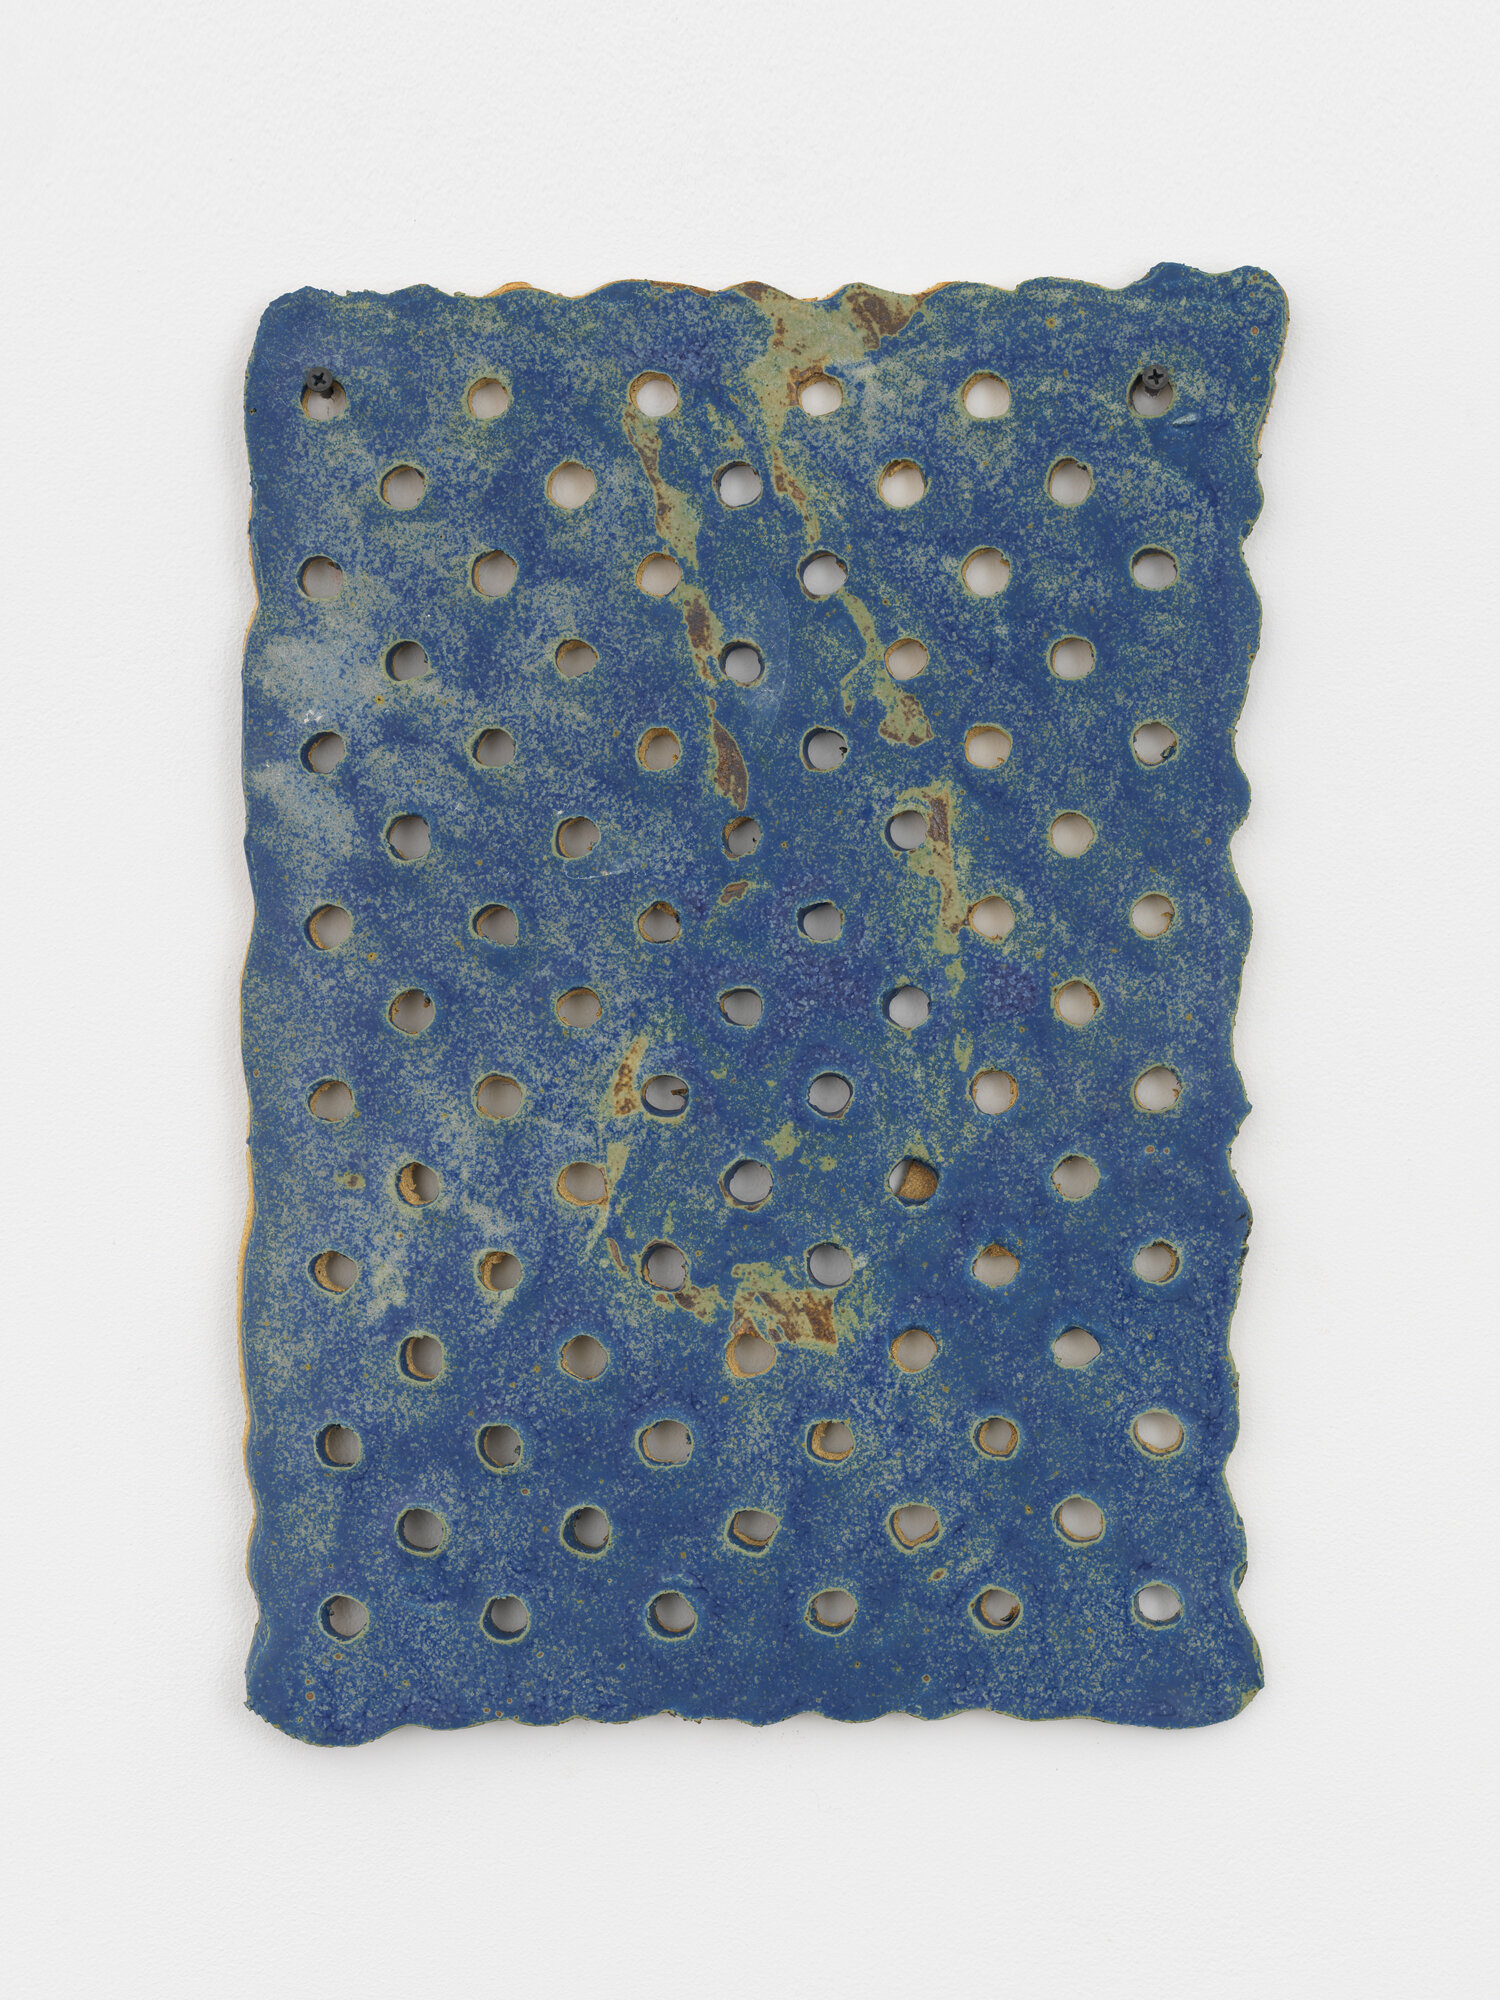   Blue Graham   Ceramic 17.5 x 12 x.5 inches    